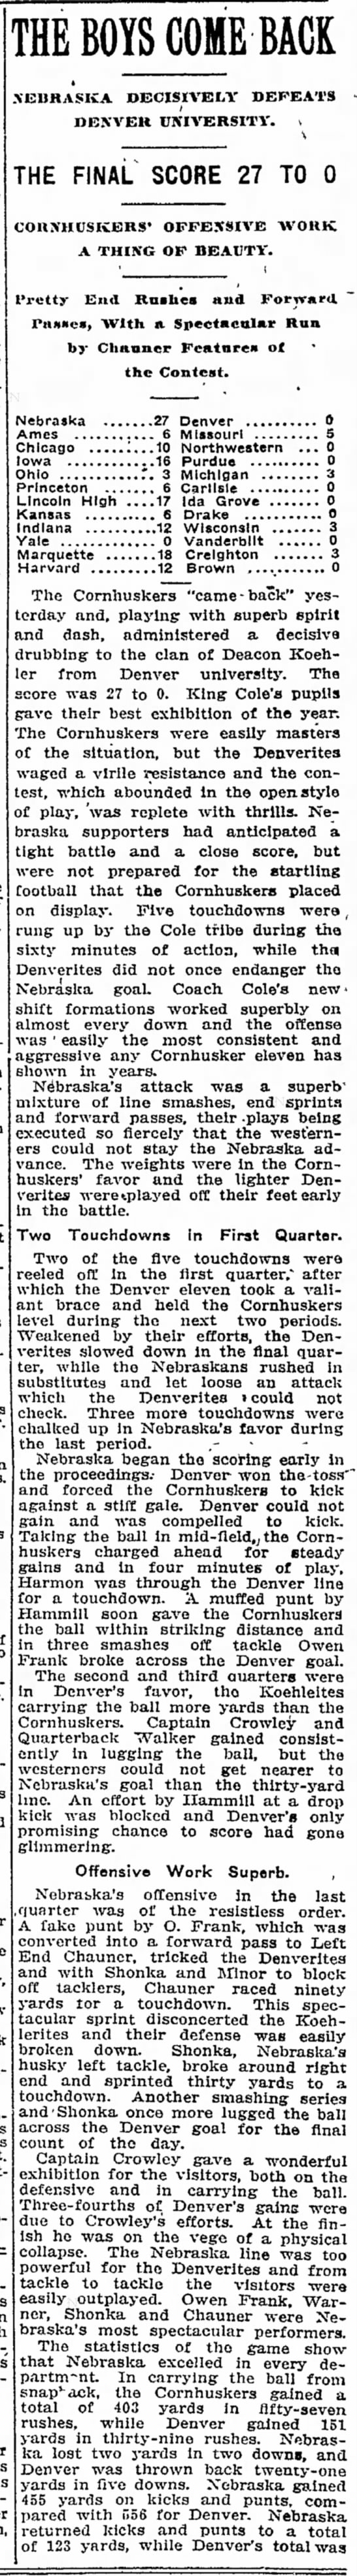 1910 Nebraska-Denver football, part 1 - 